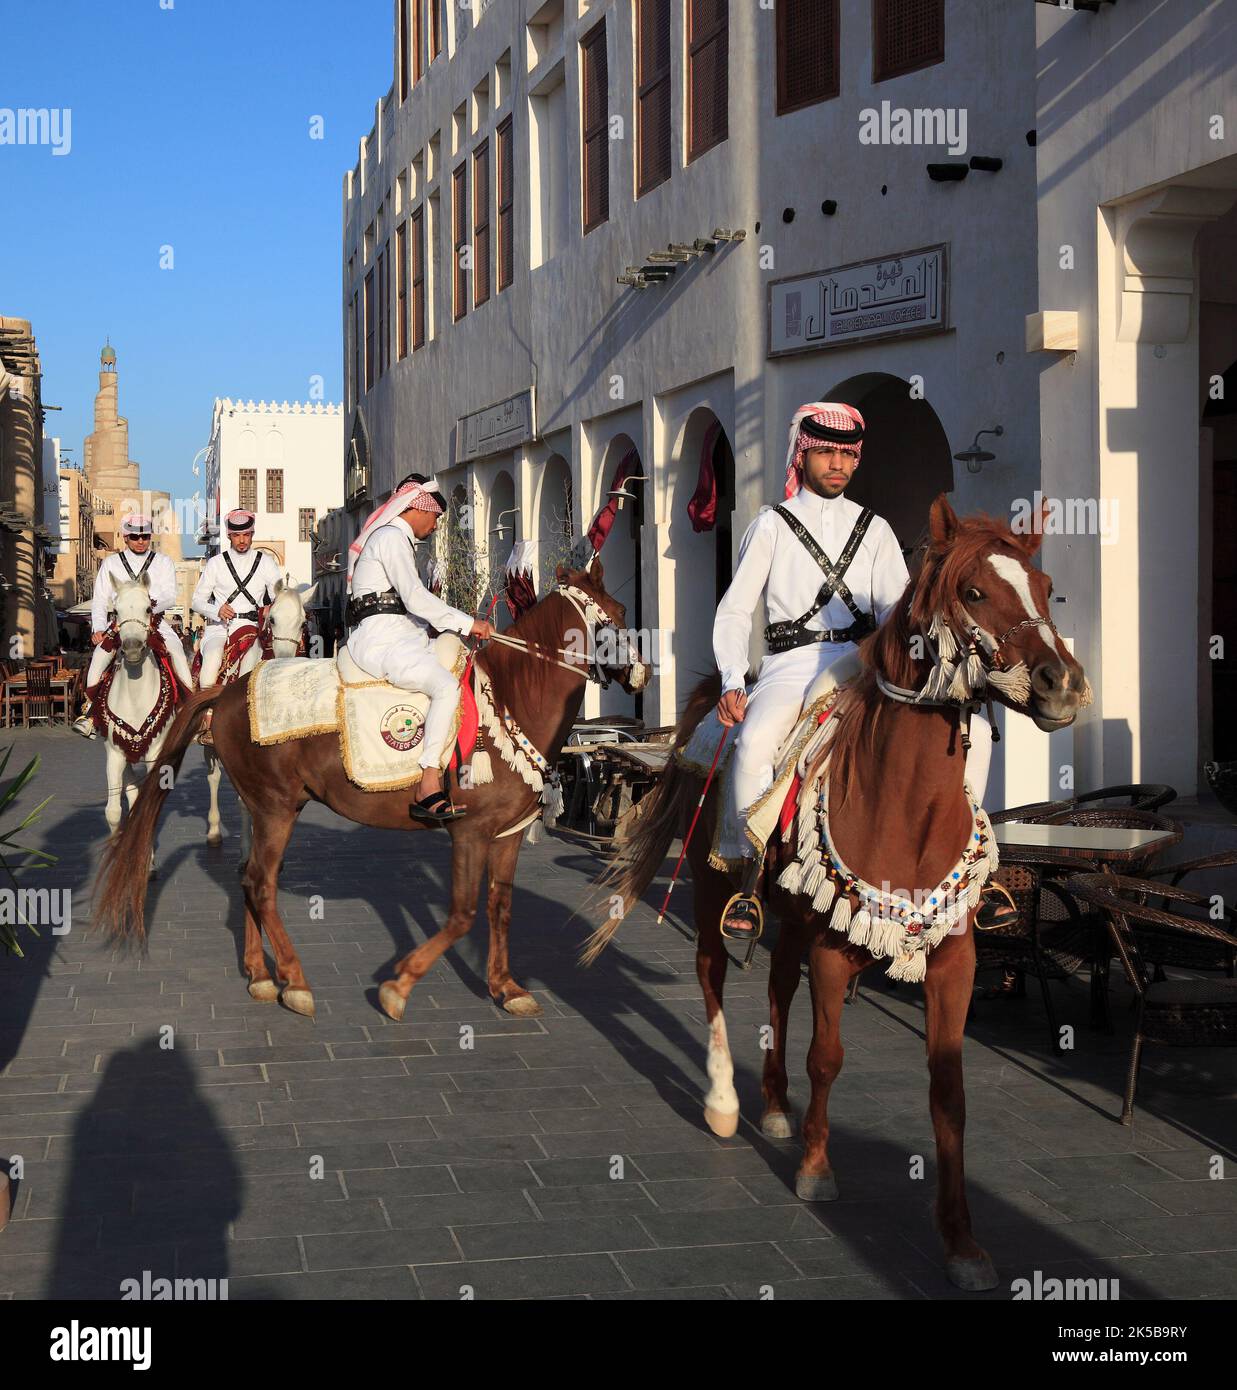 Altstadt von Doha, Reiter auf Araberpferden, Qatar, Katar Banque D'Images